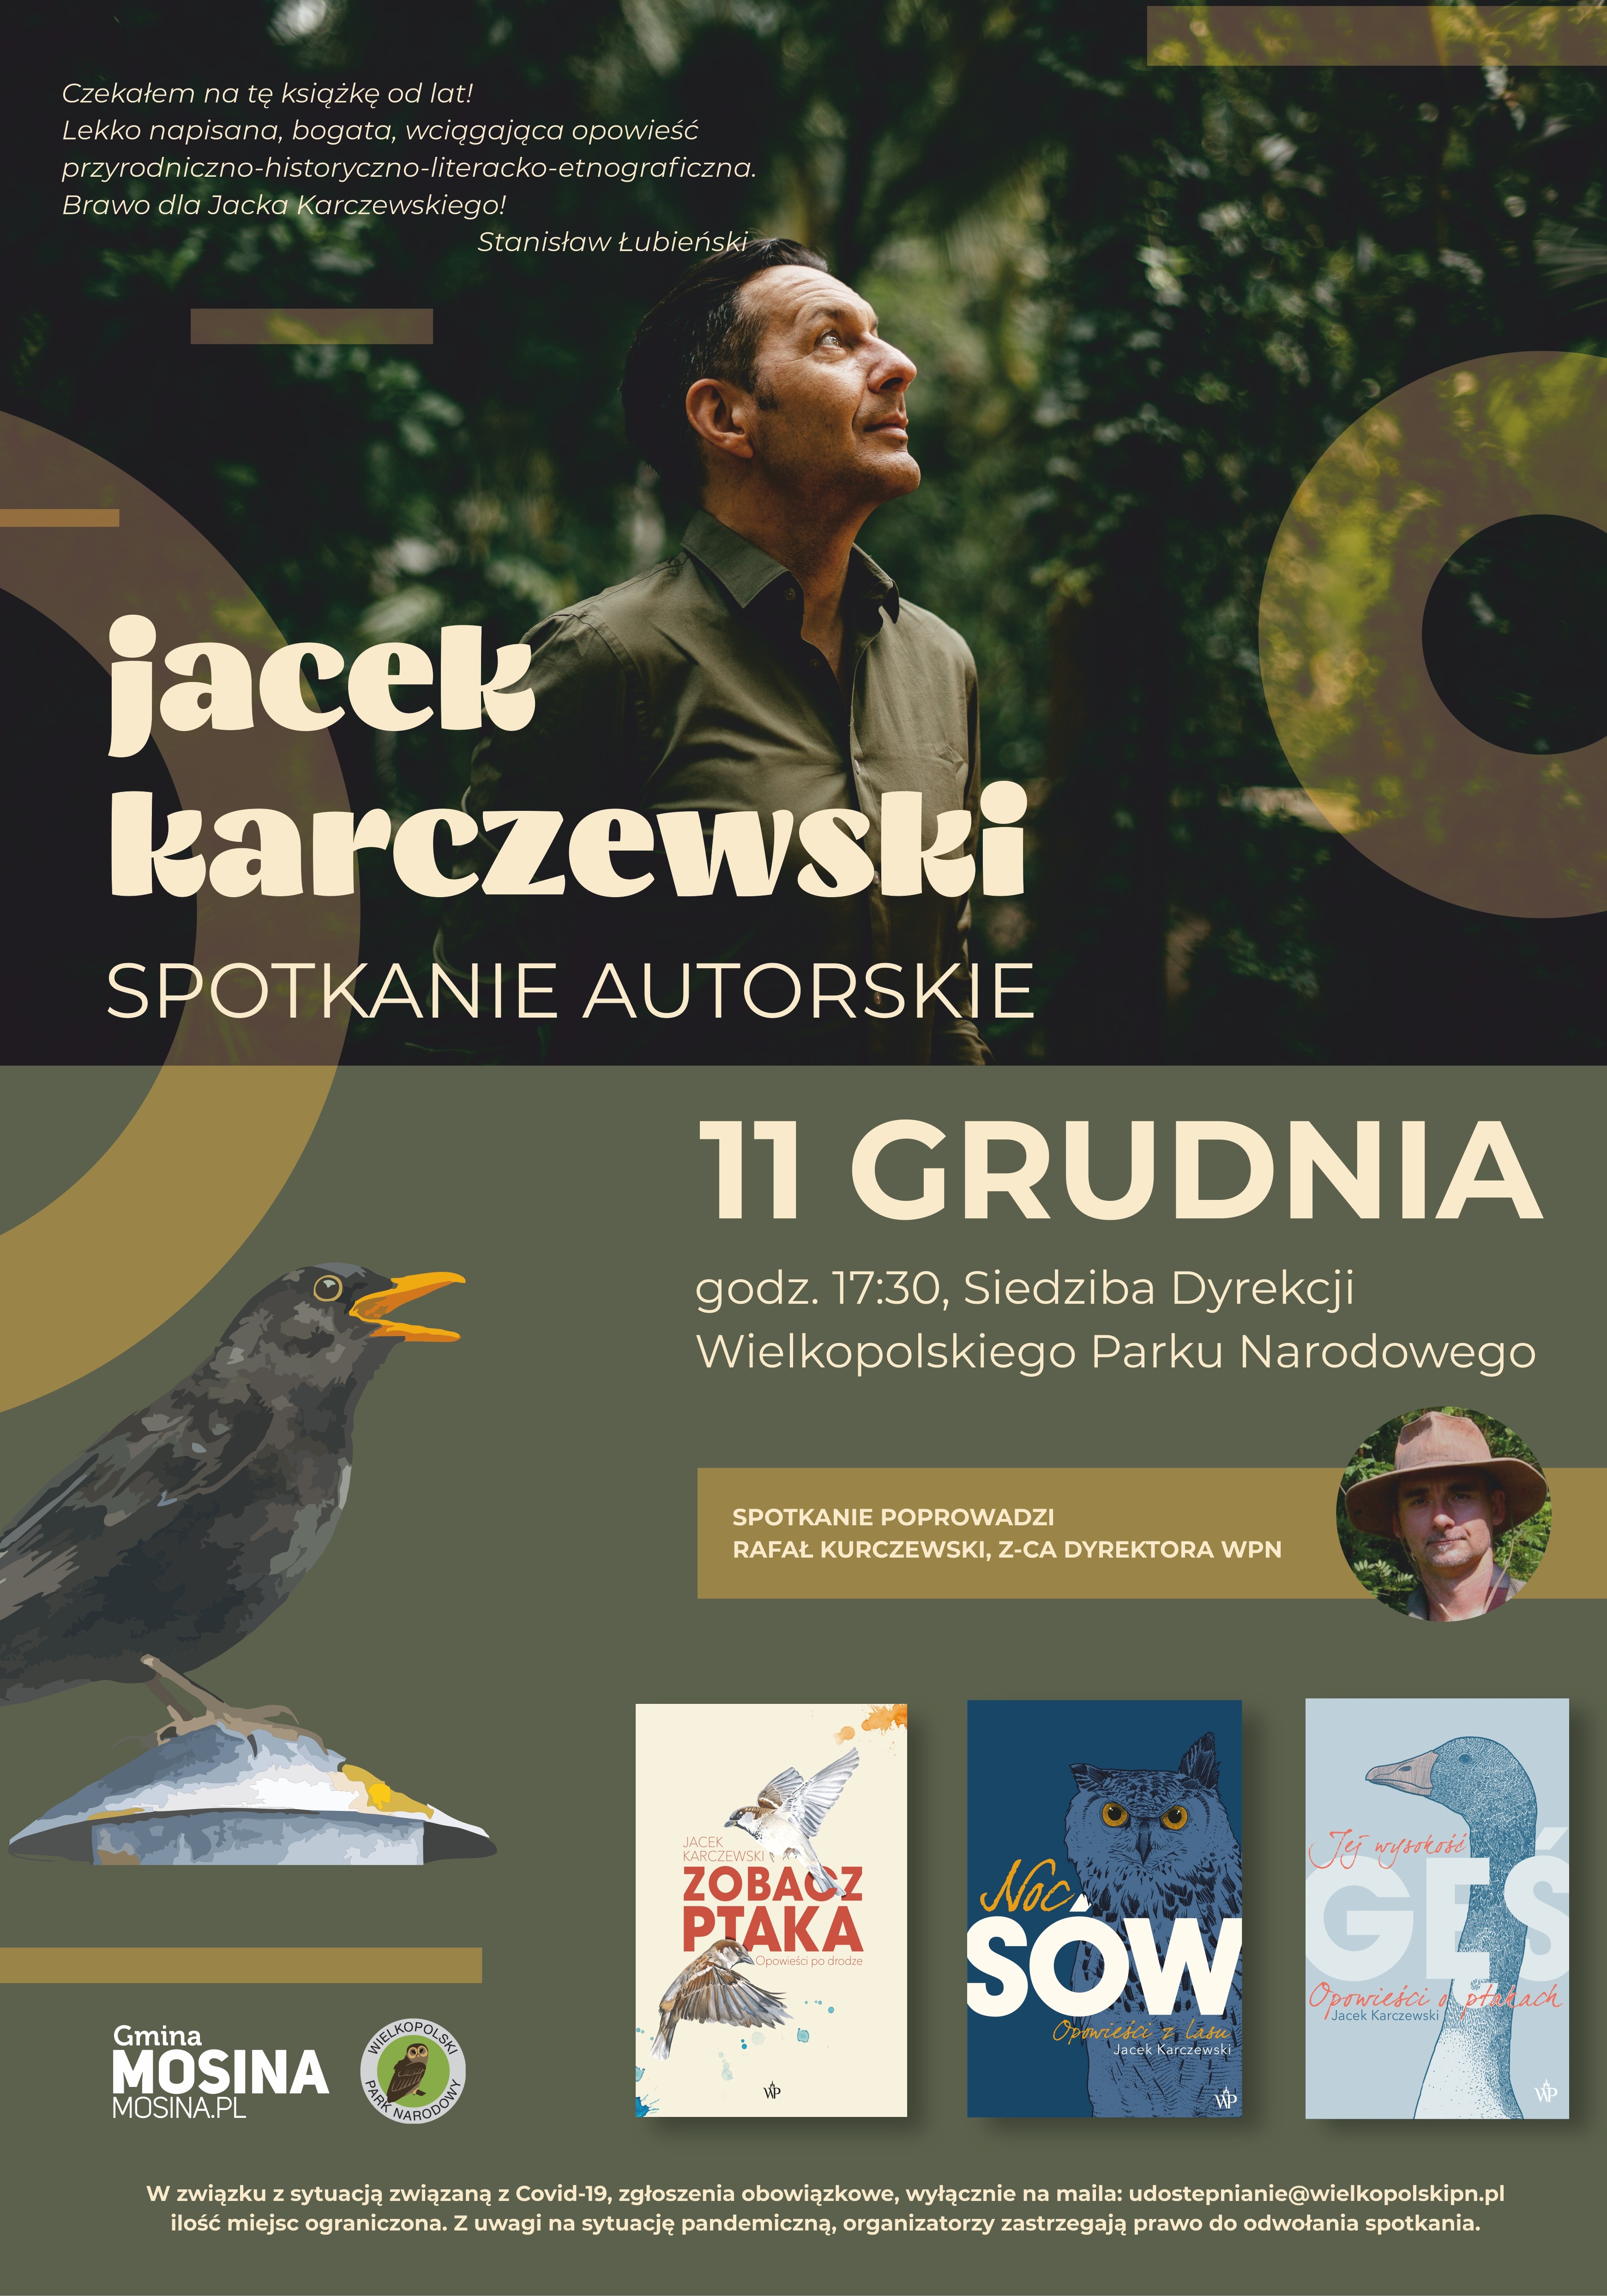 Spotkanie autorskie z Jackiem Karczewskim